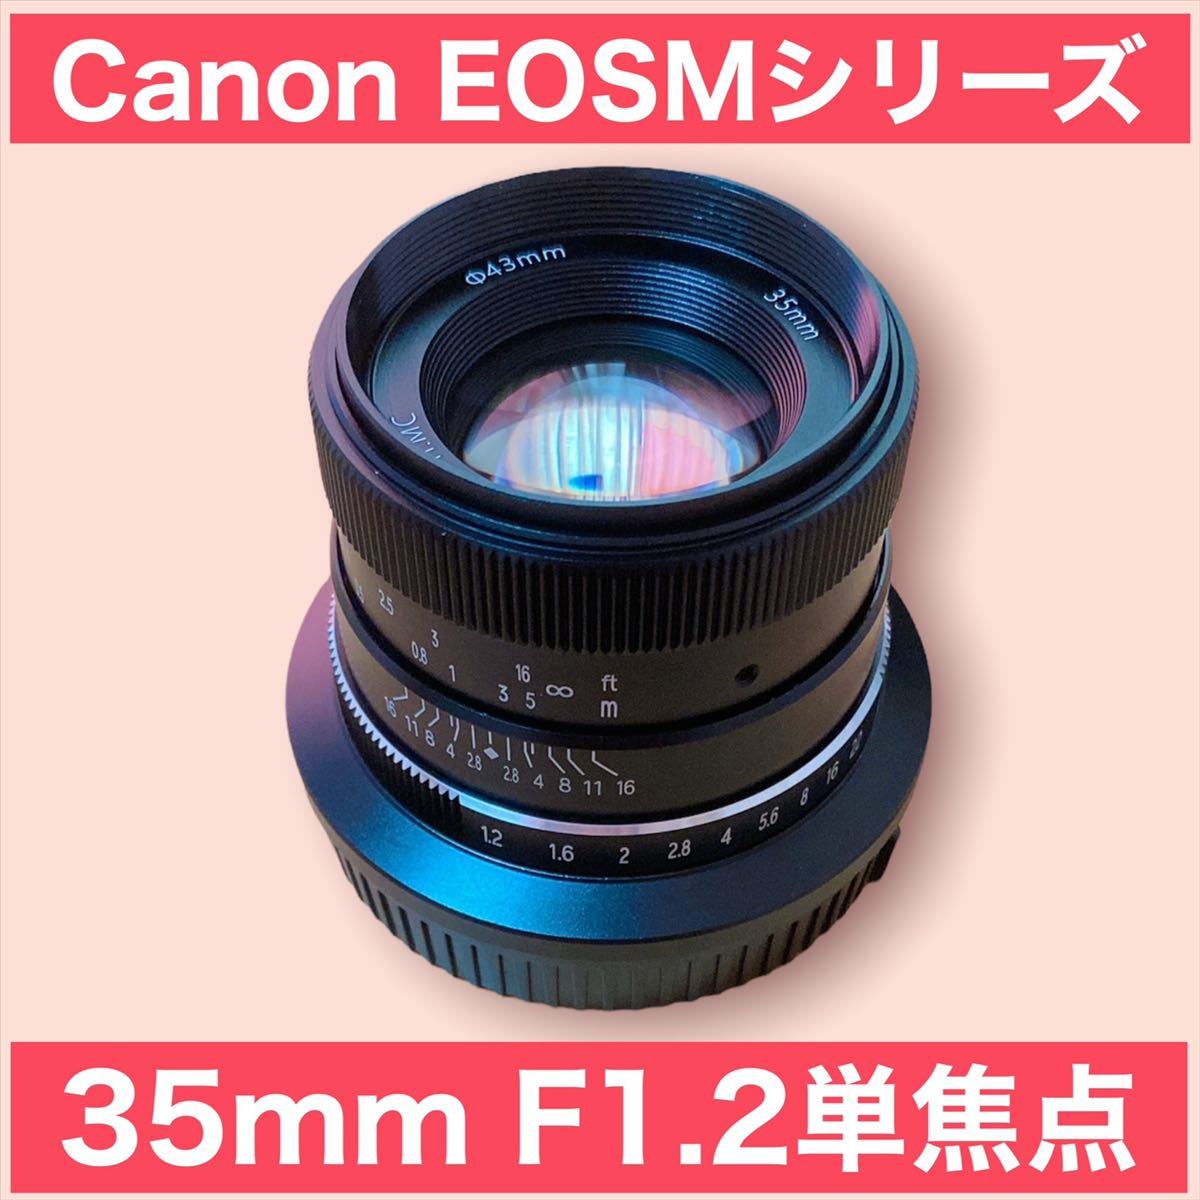 独特な店 35mm F1.2 単焦点！Canon EOSM用！ミラーレス一眼！カメラ女子　キヤノン用サードパーティ製品！おすすめ！美品！綺麗！簡単！ キヤノン